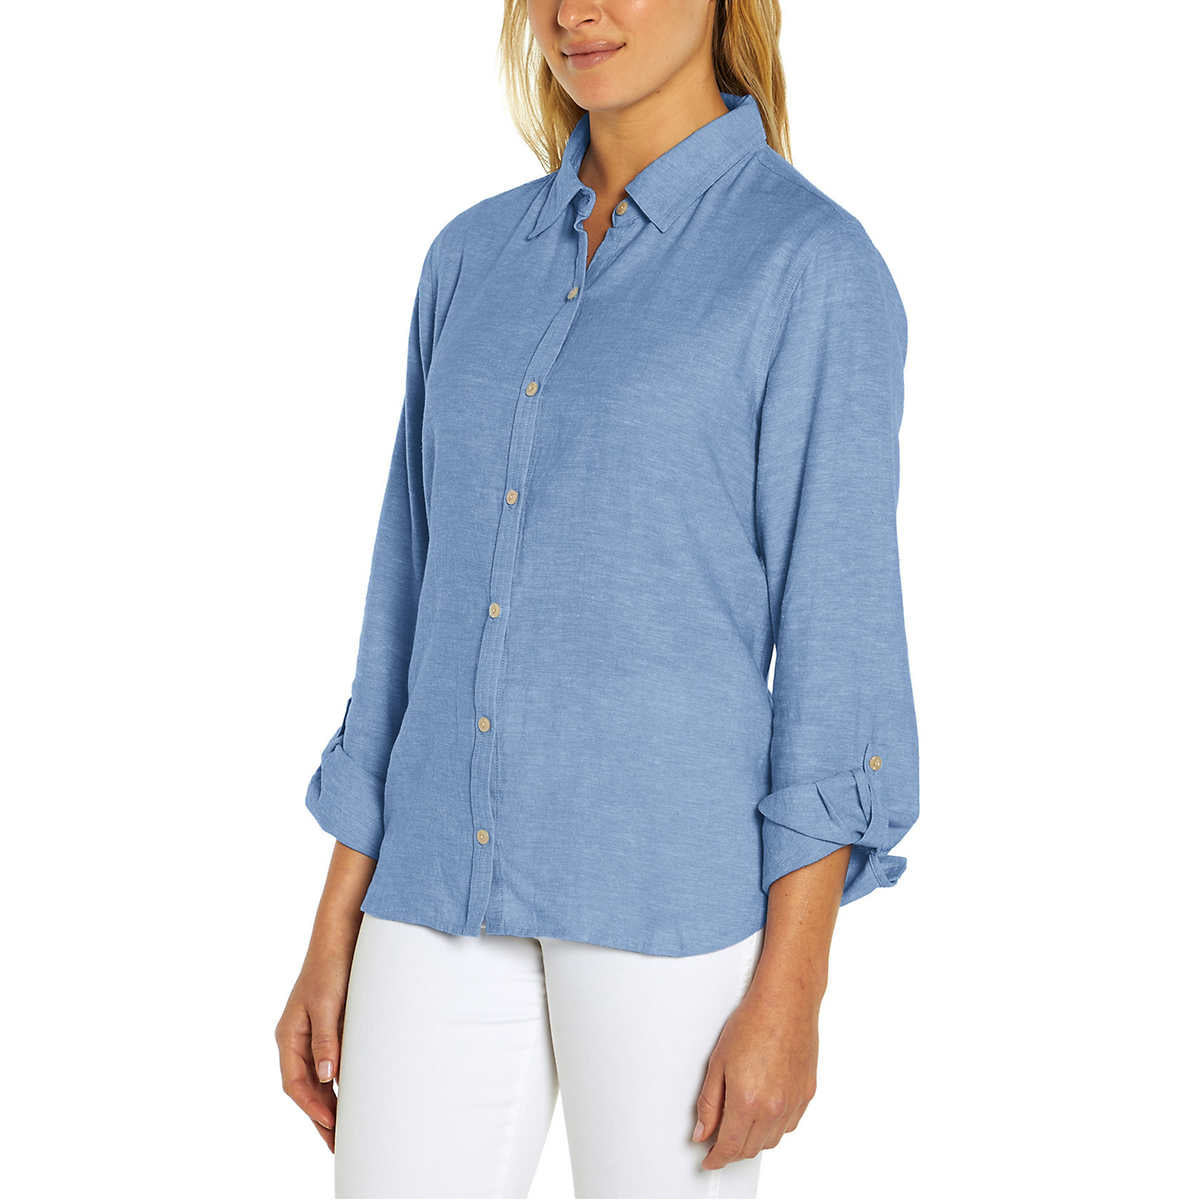 Orvis Women's Soft Lightweight Linen Blend Long Sleeve Top Button Up S –  Letay Store